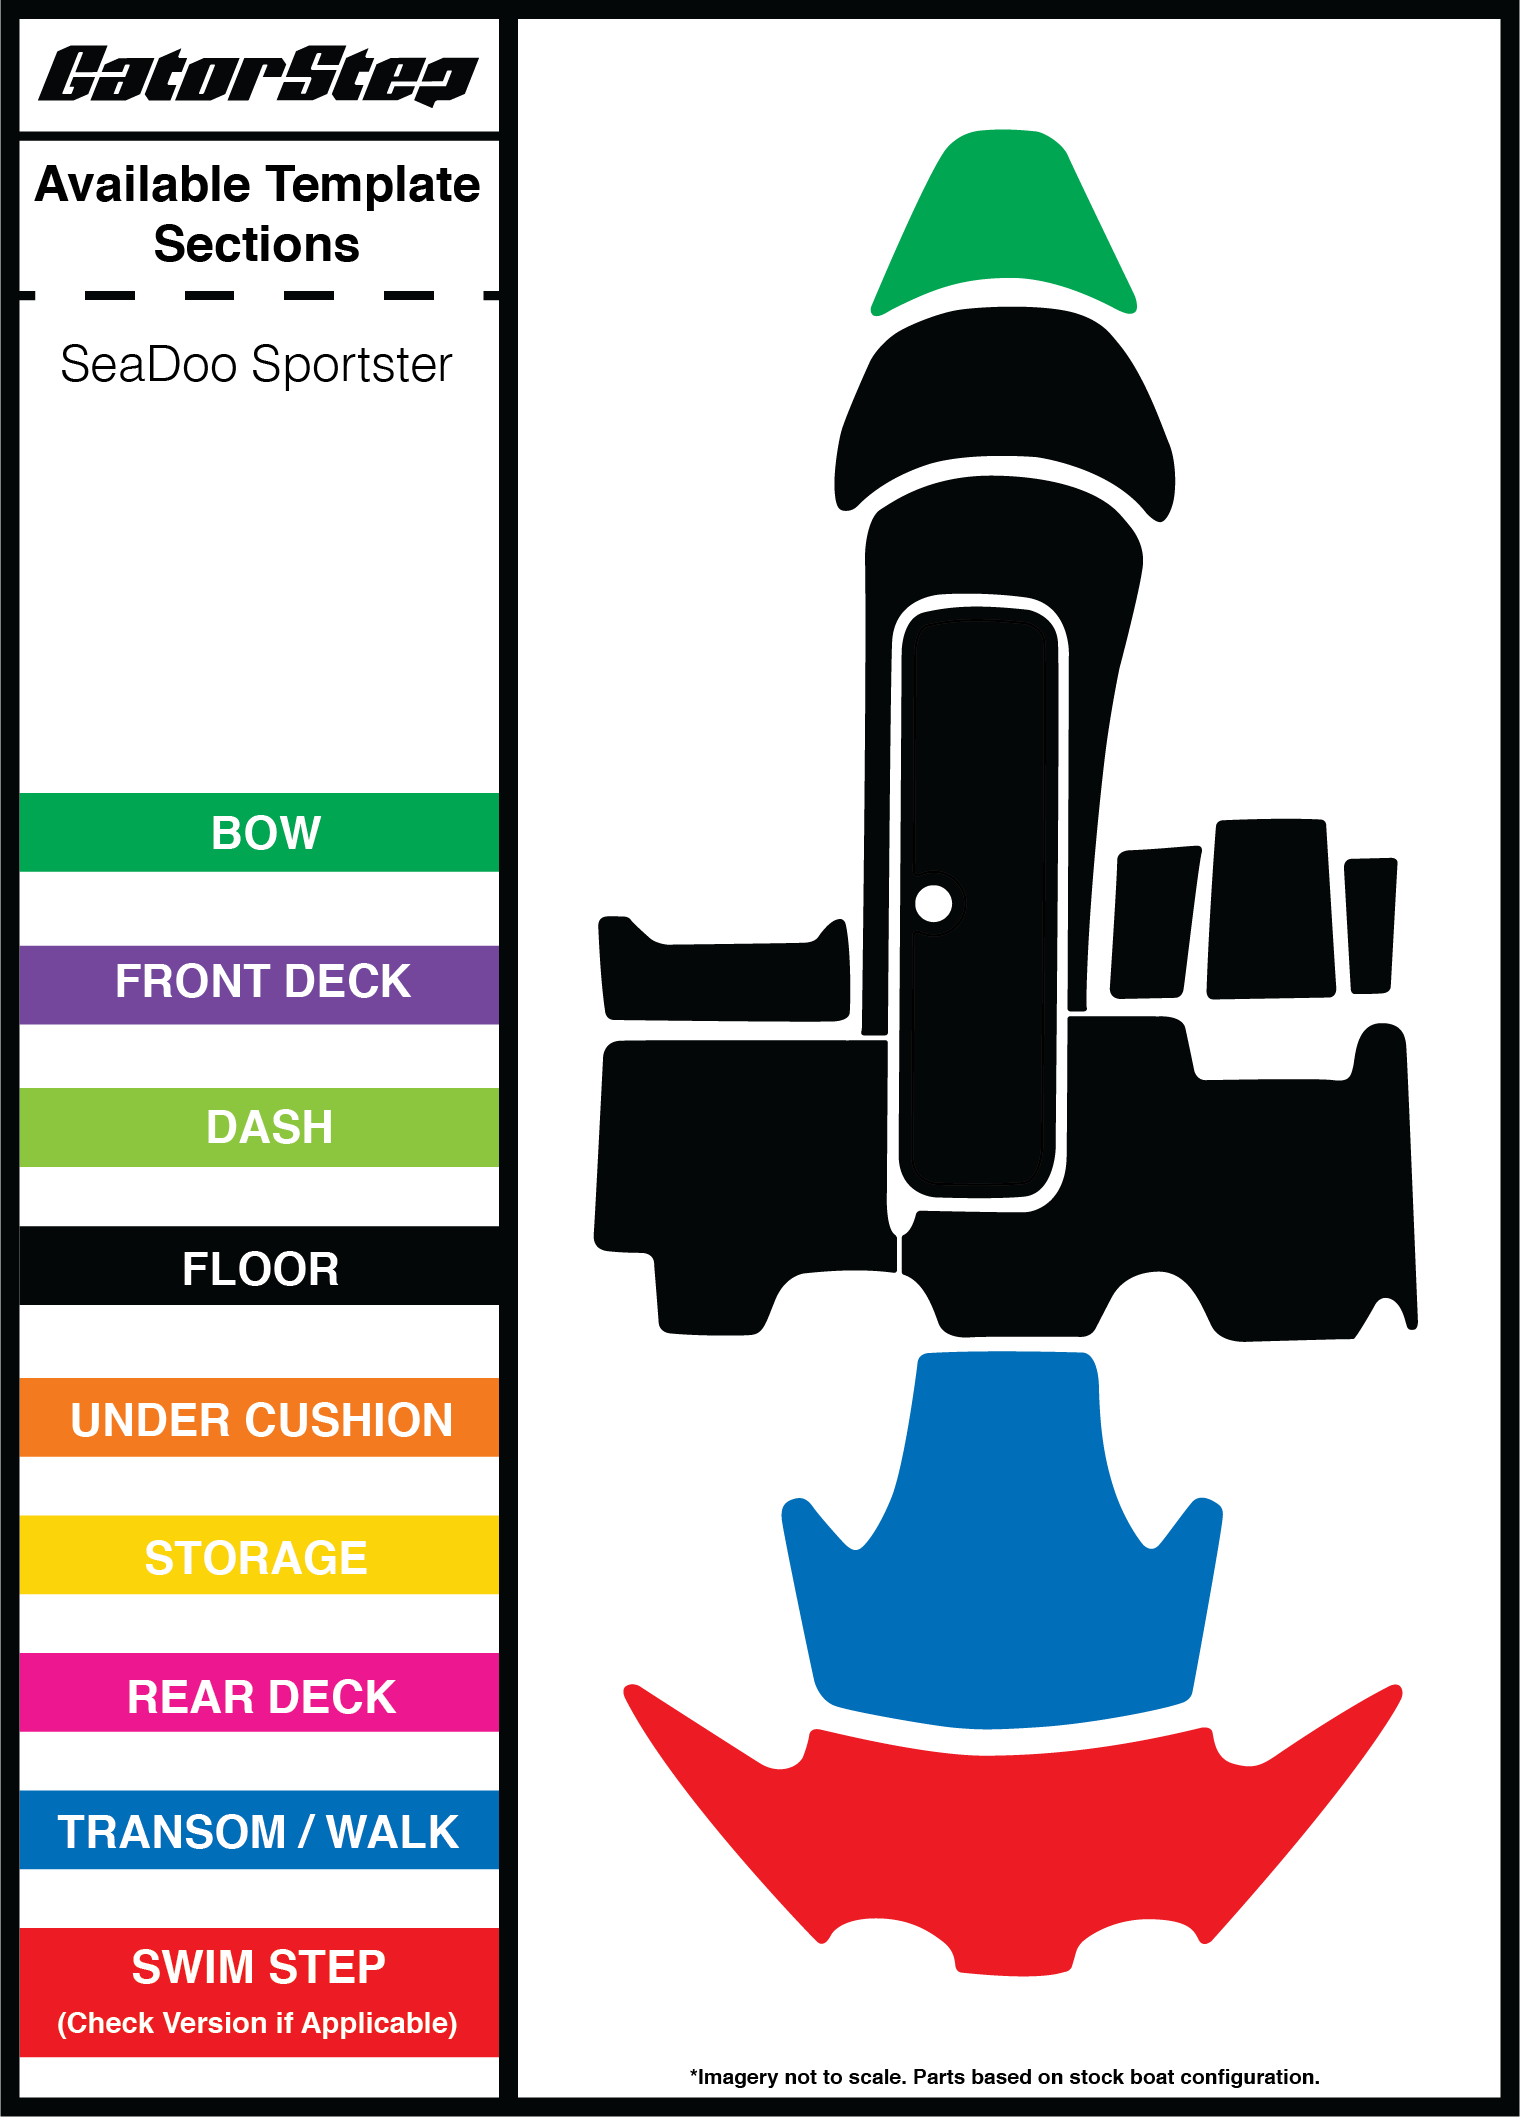 SeaDoo Sportster